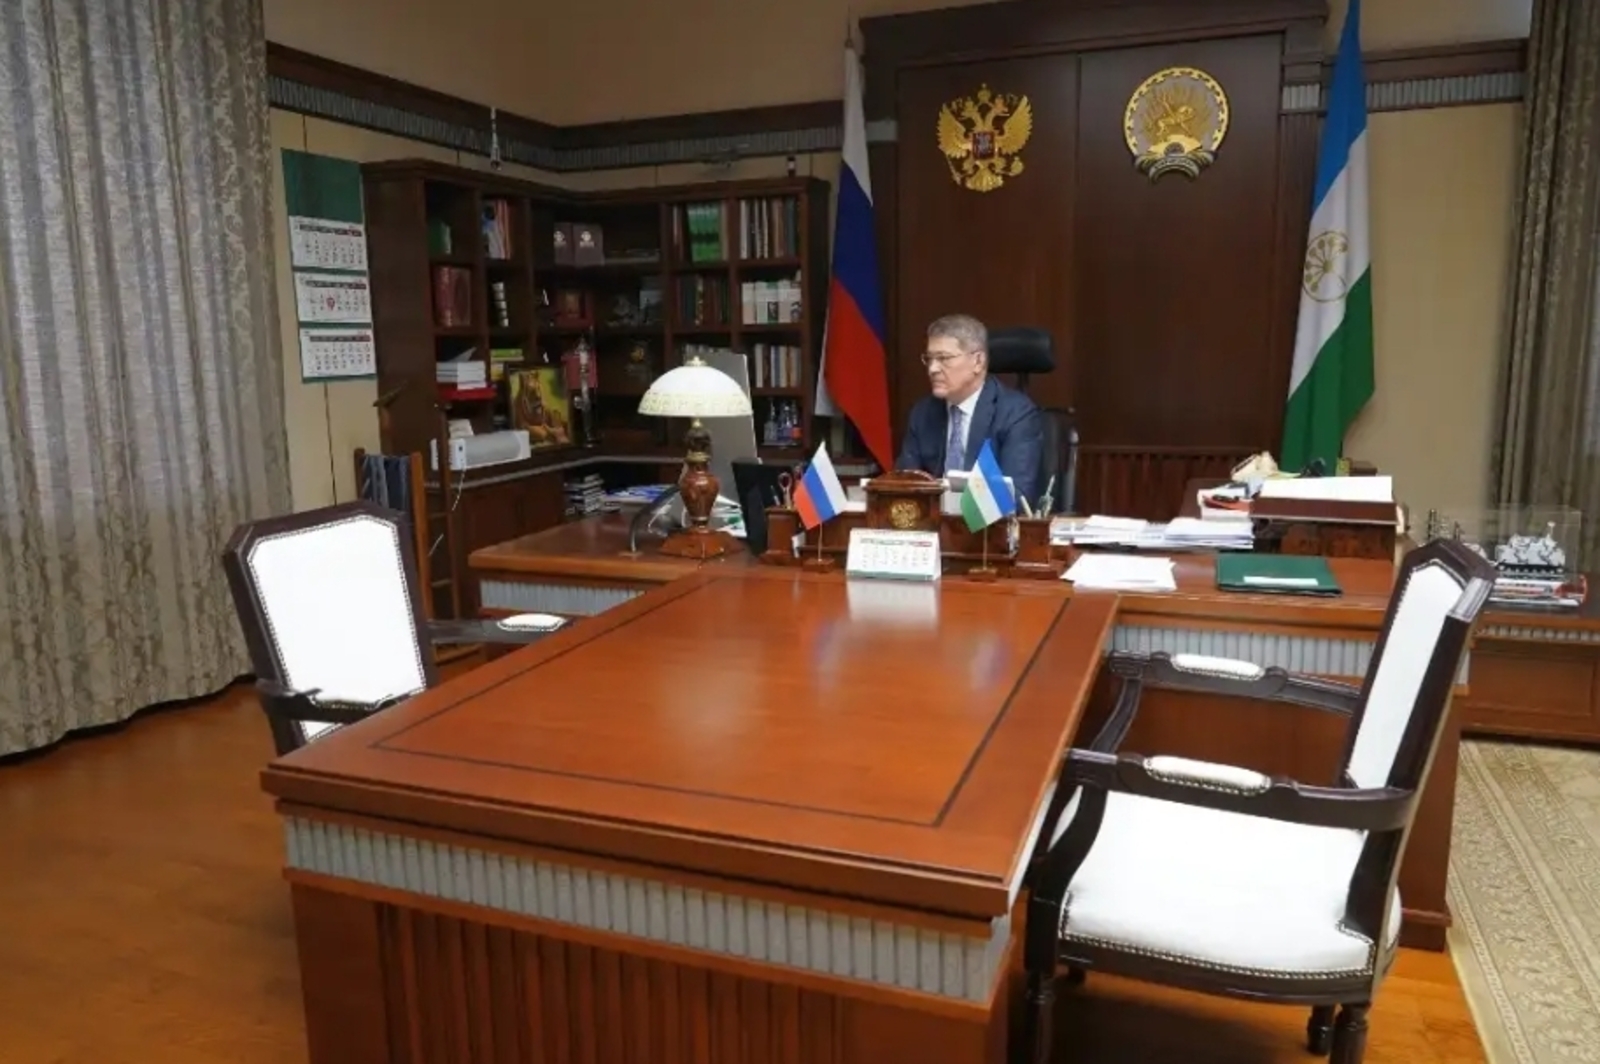 Радий Хәбиров: "Дәүләт власы органдарының финанс дисциплинаһын күтәреү мөһим эш булып тора"